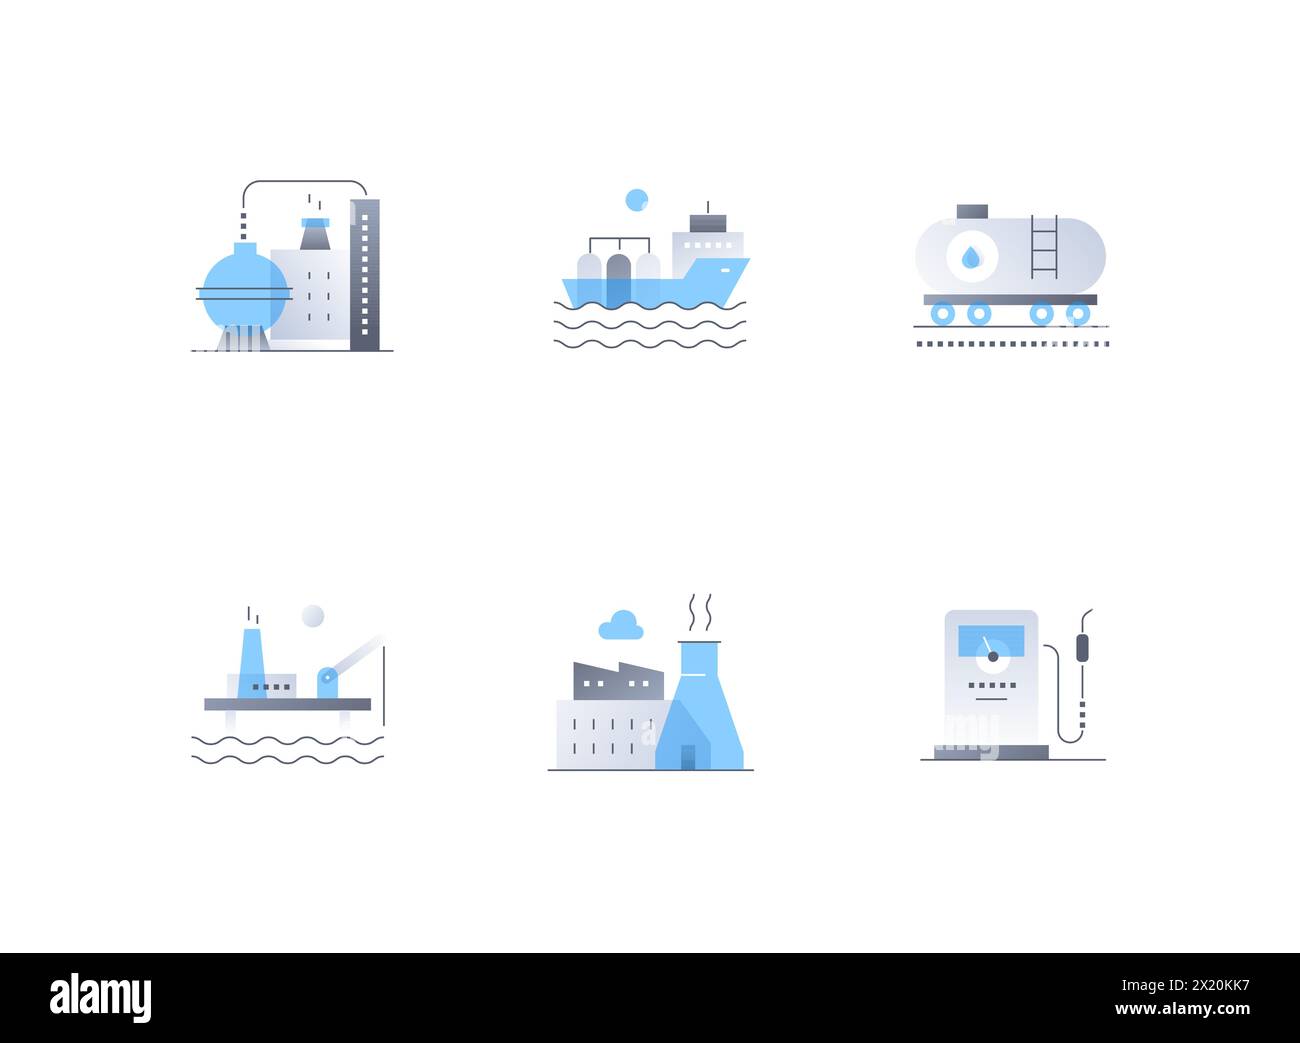 Ölproduktion und -Transport – Symbole im flachen Design Stock Vektor